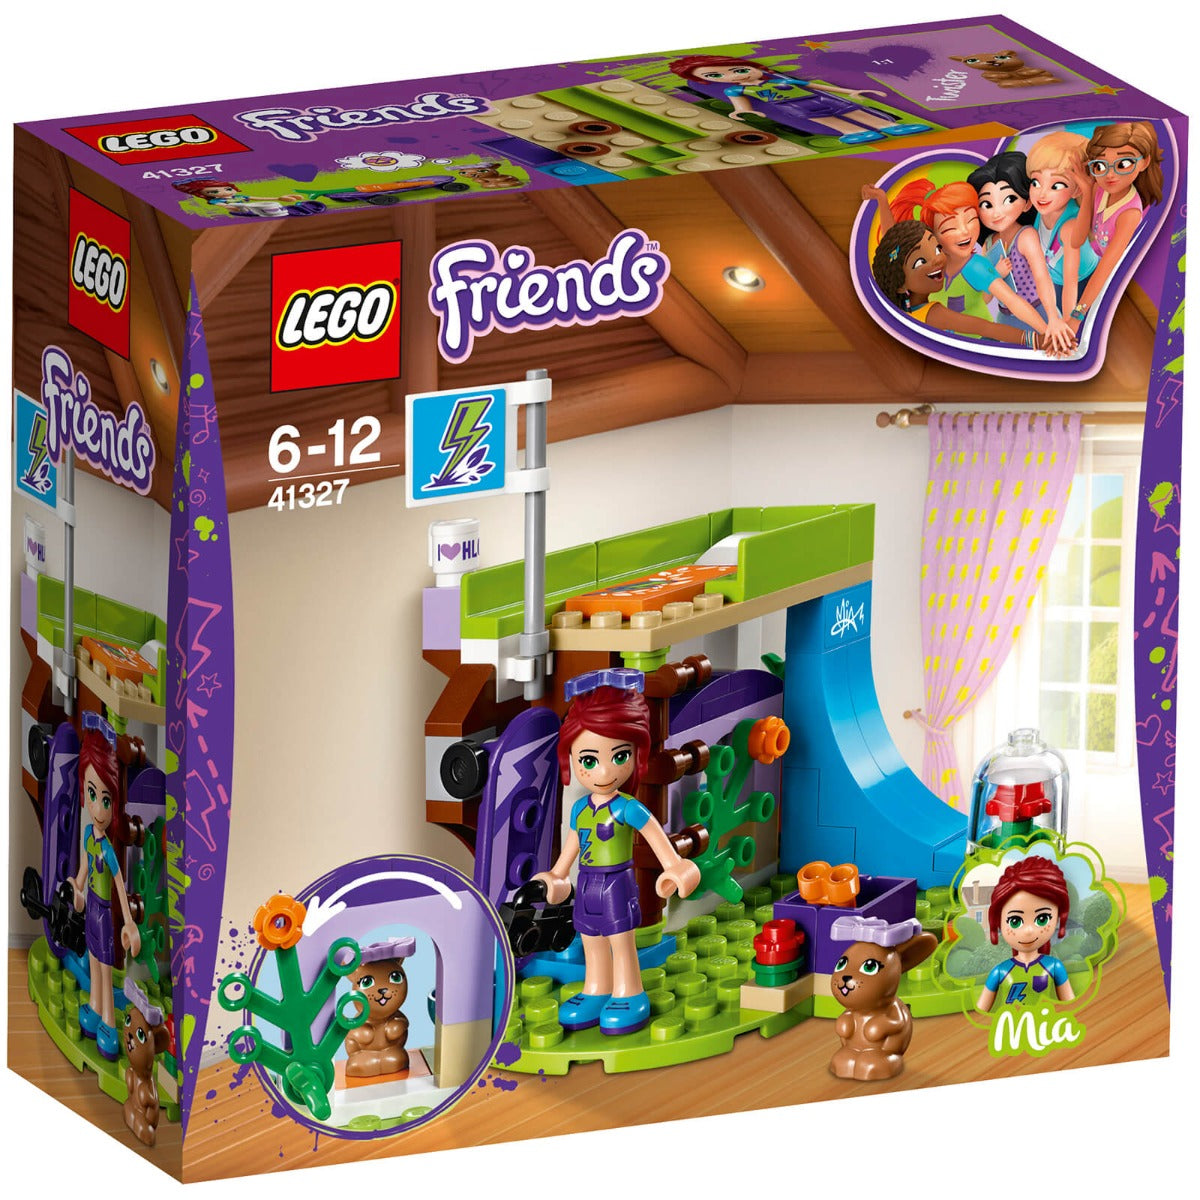 Lego Friends Mias Bedroom 41327